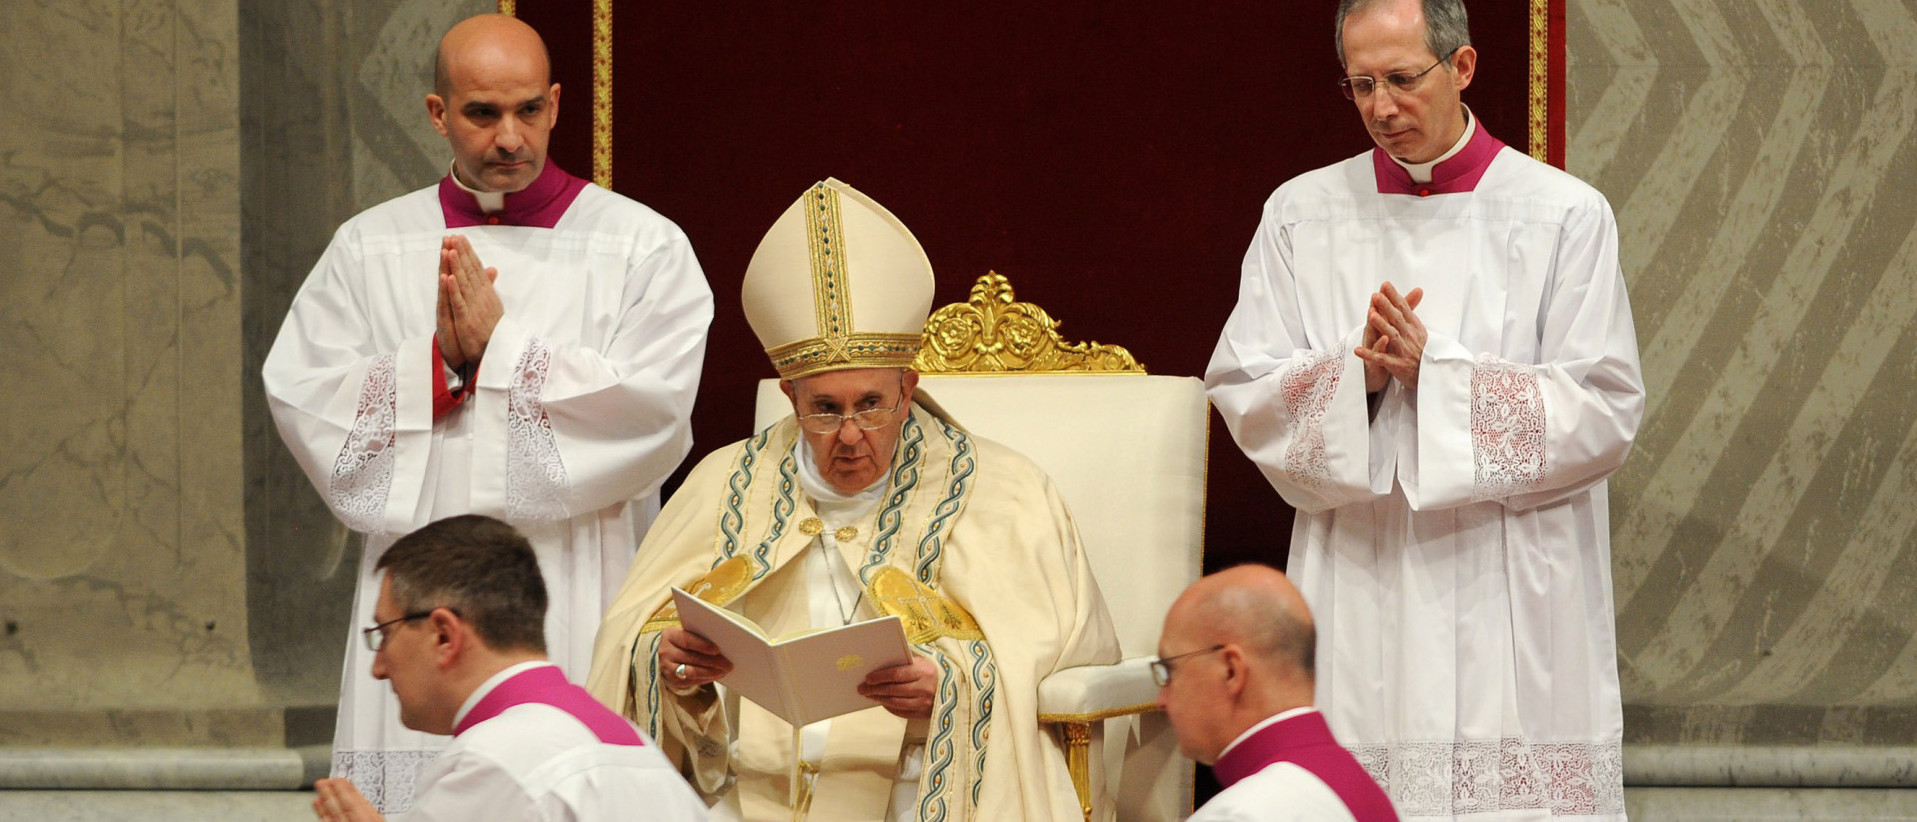 Papst Franziskus eröffnet das ausserordentliche Heilige Jahr 2015.